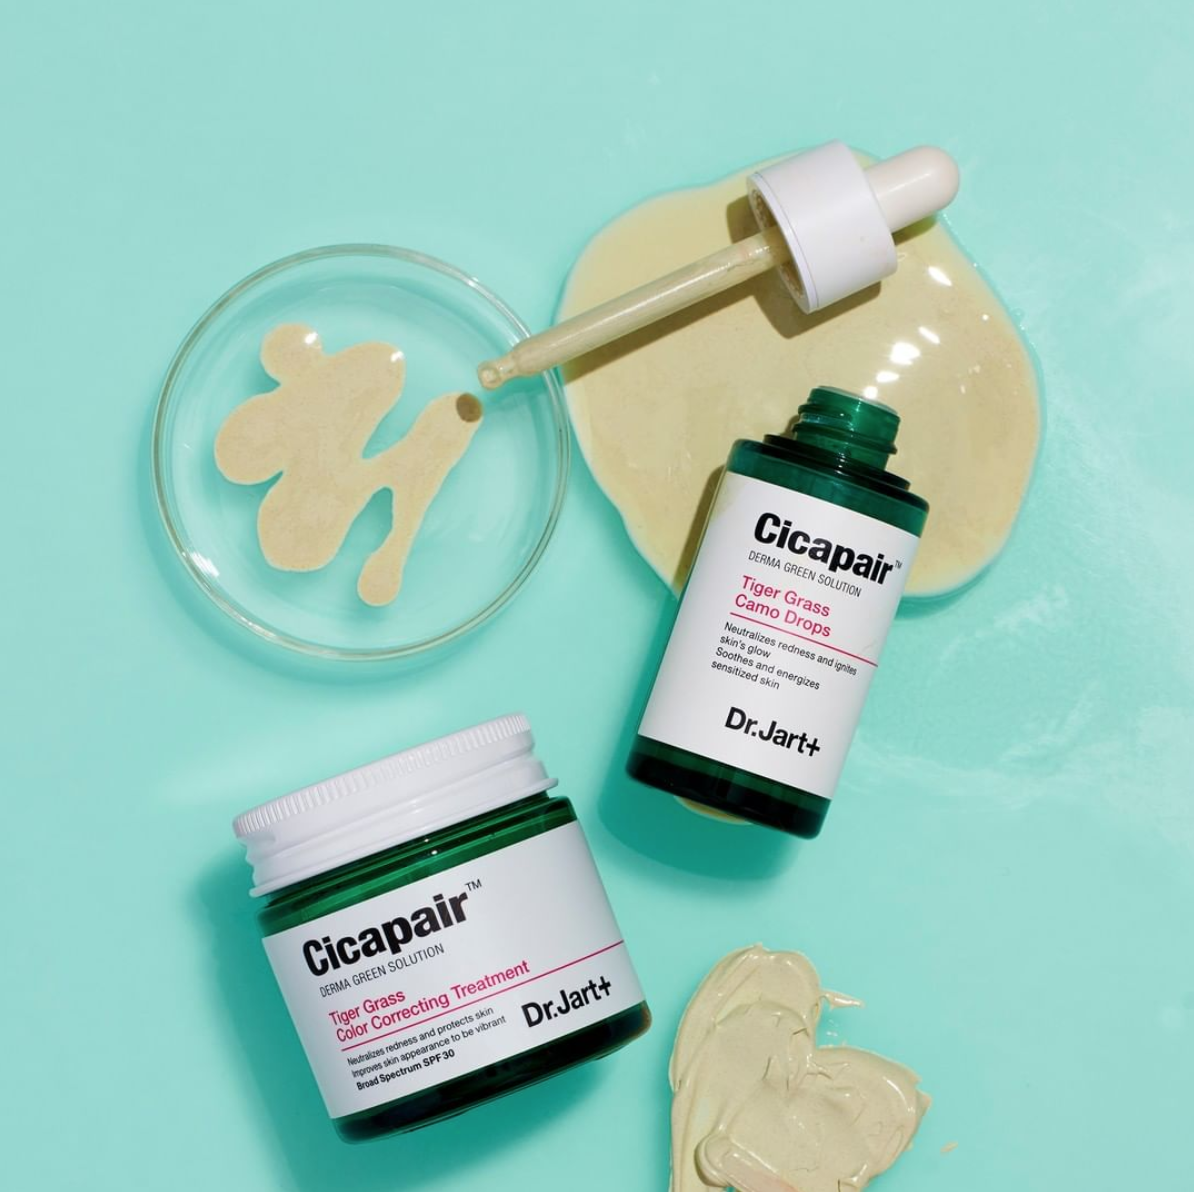 Dr. Jart Cicapair novita 2019 Tiger Grass Cream - Camo Drops - Best Cream Solution Duo Set - review, recensione, info, prezzo, dove acquistare